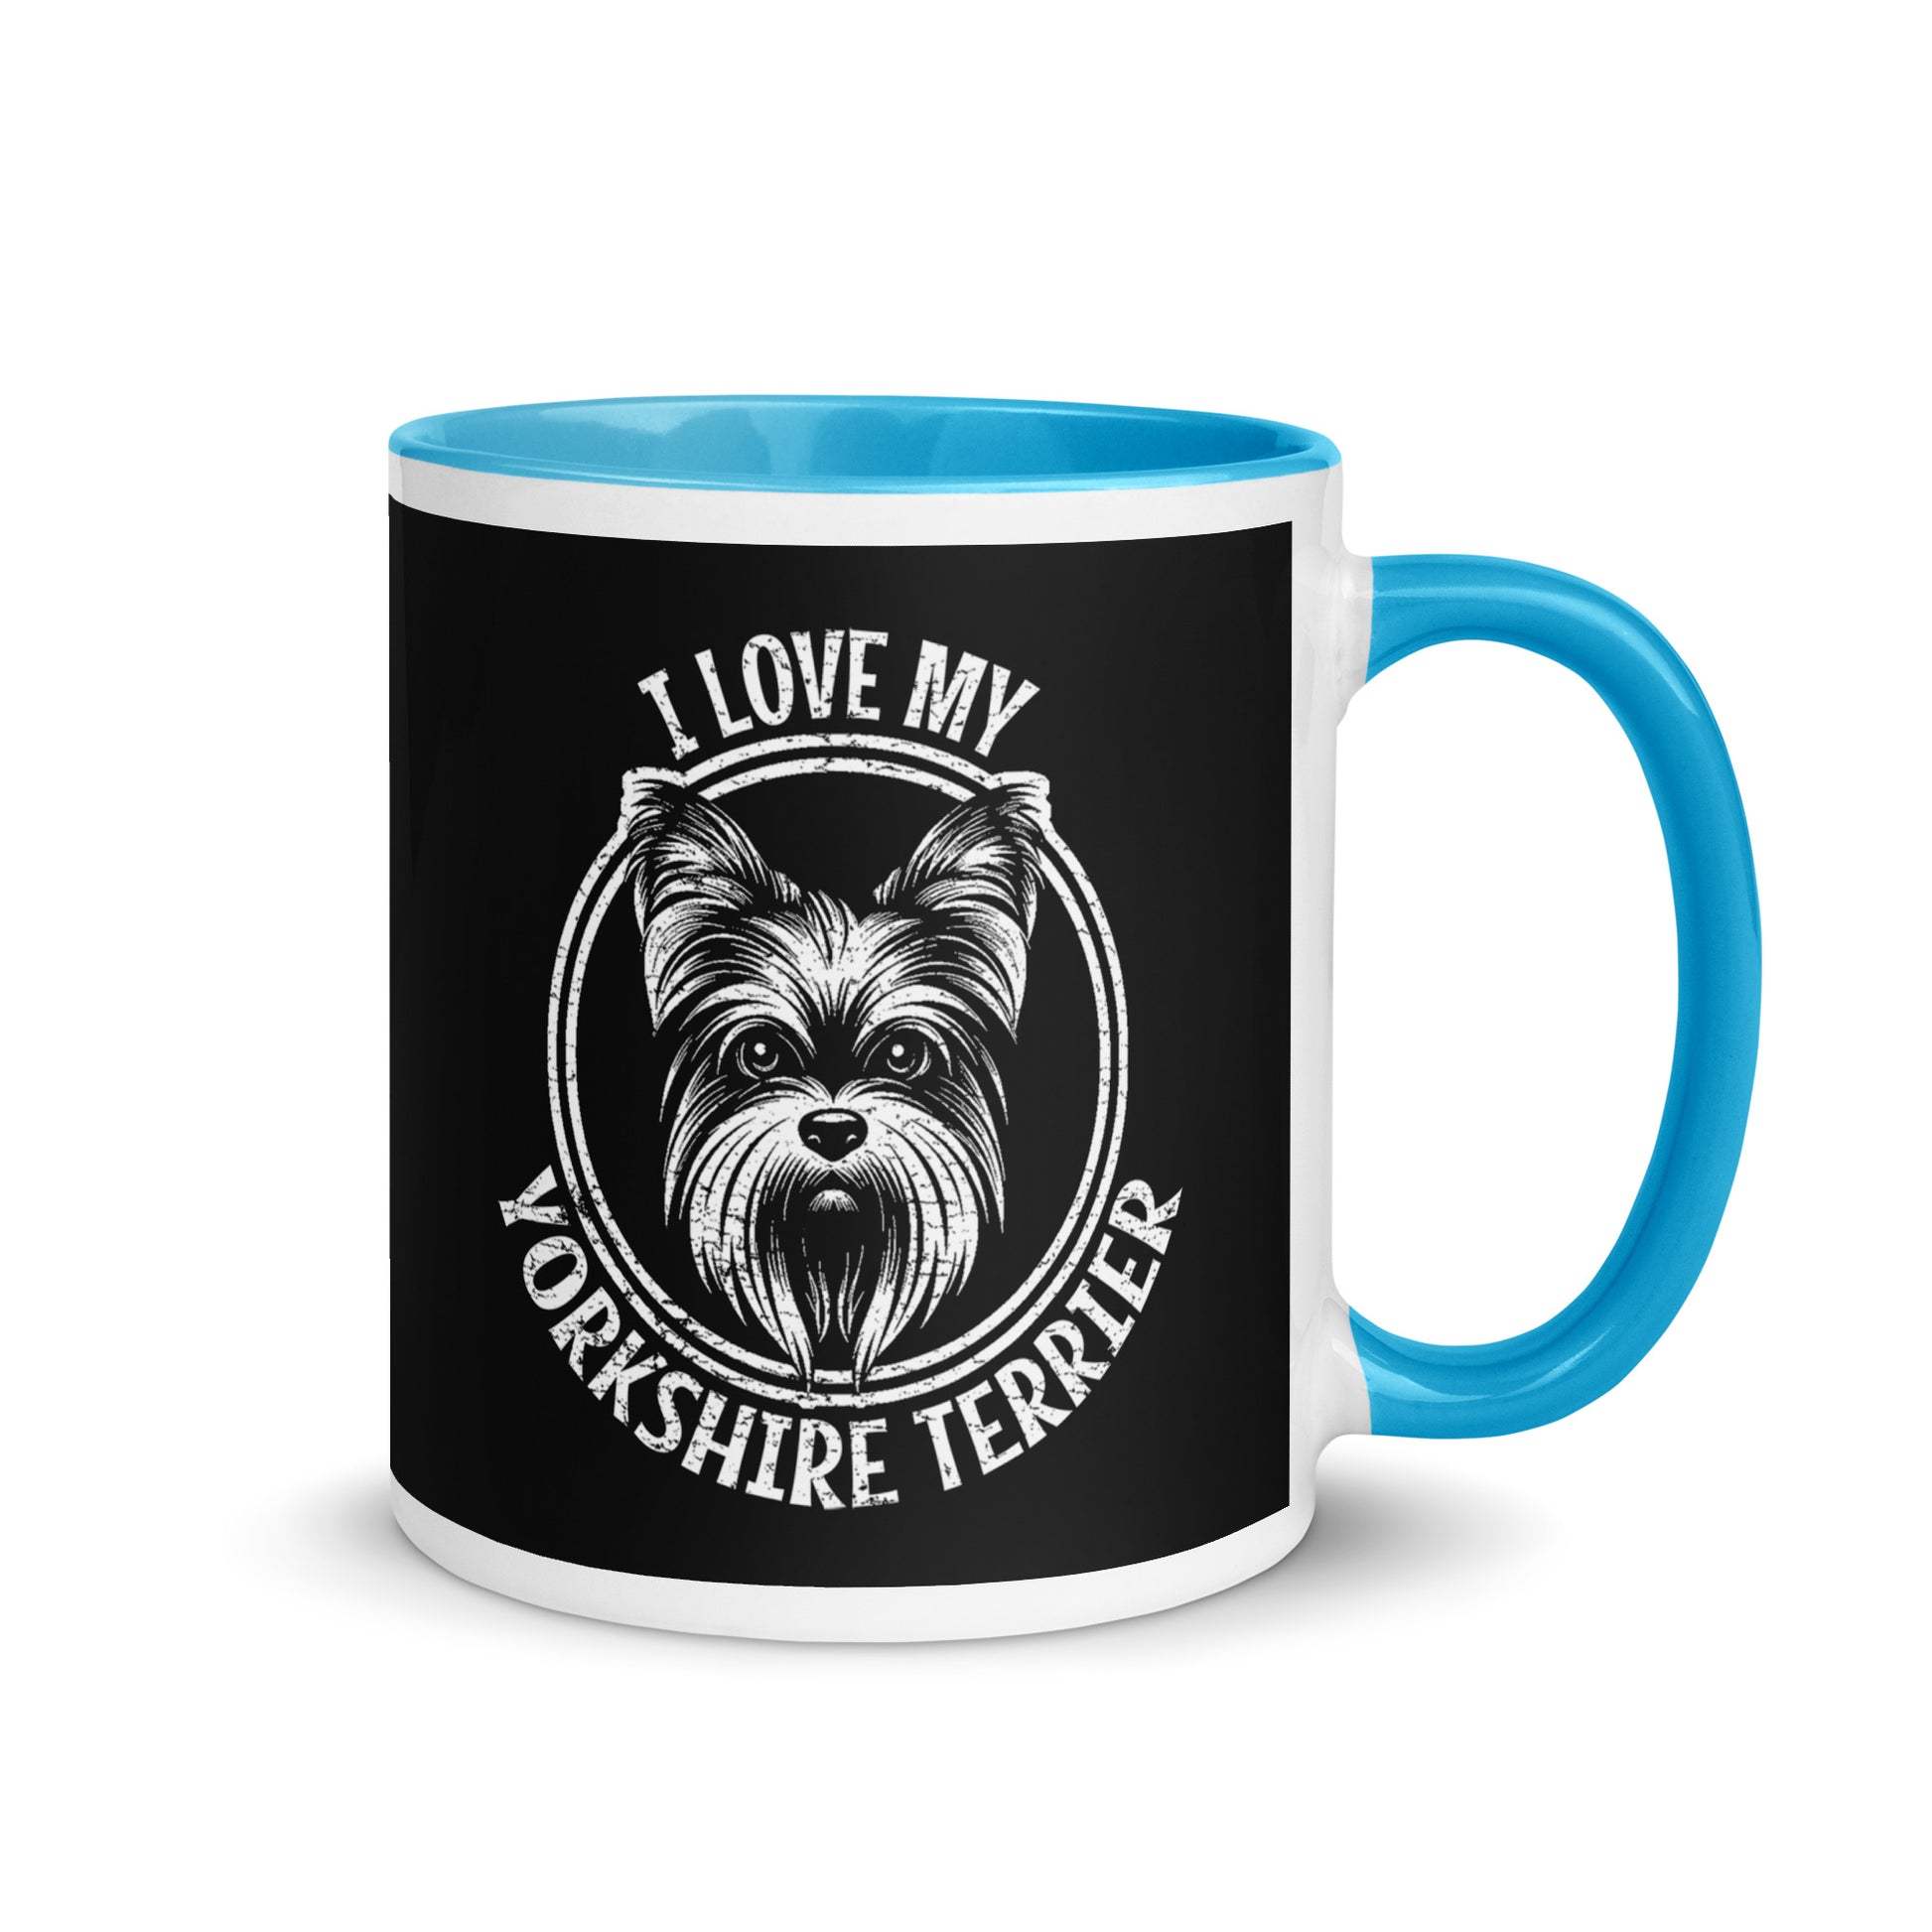 Yorkshire Terrier Mug, Yorkshire Terrier gift, gift for dog mom, custom dog gift, dog owner gift, pet memorial gift